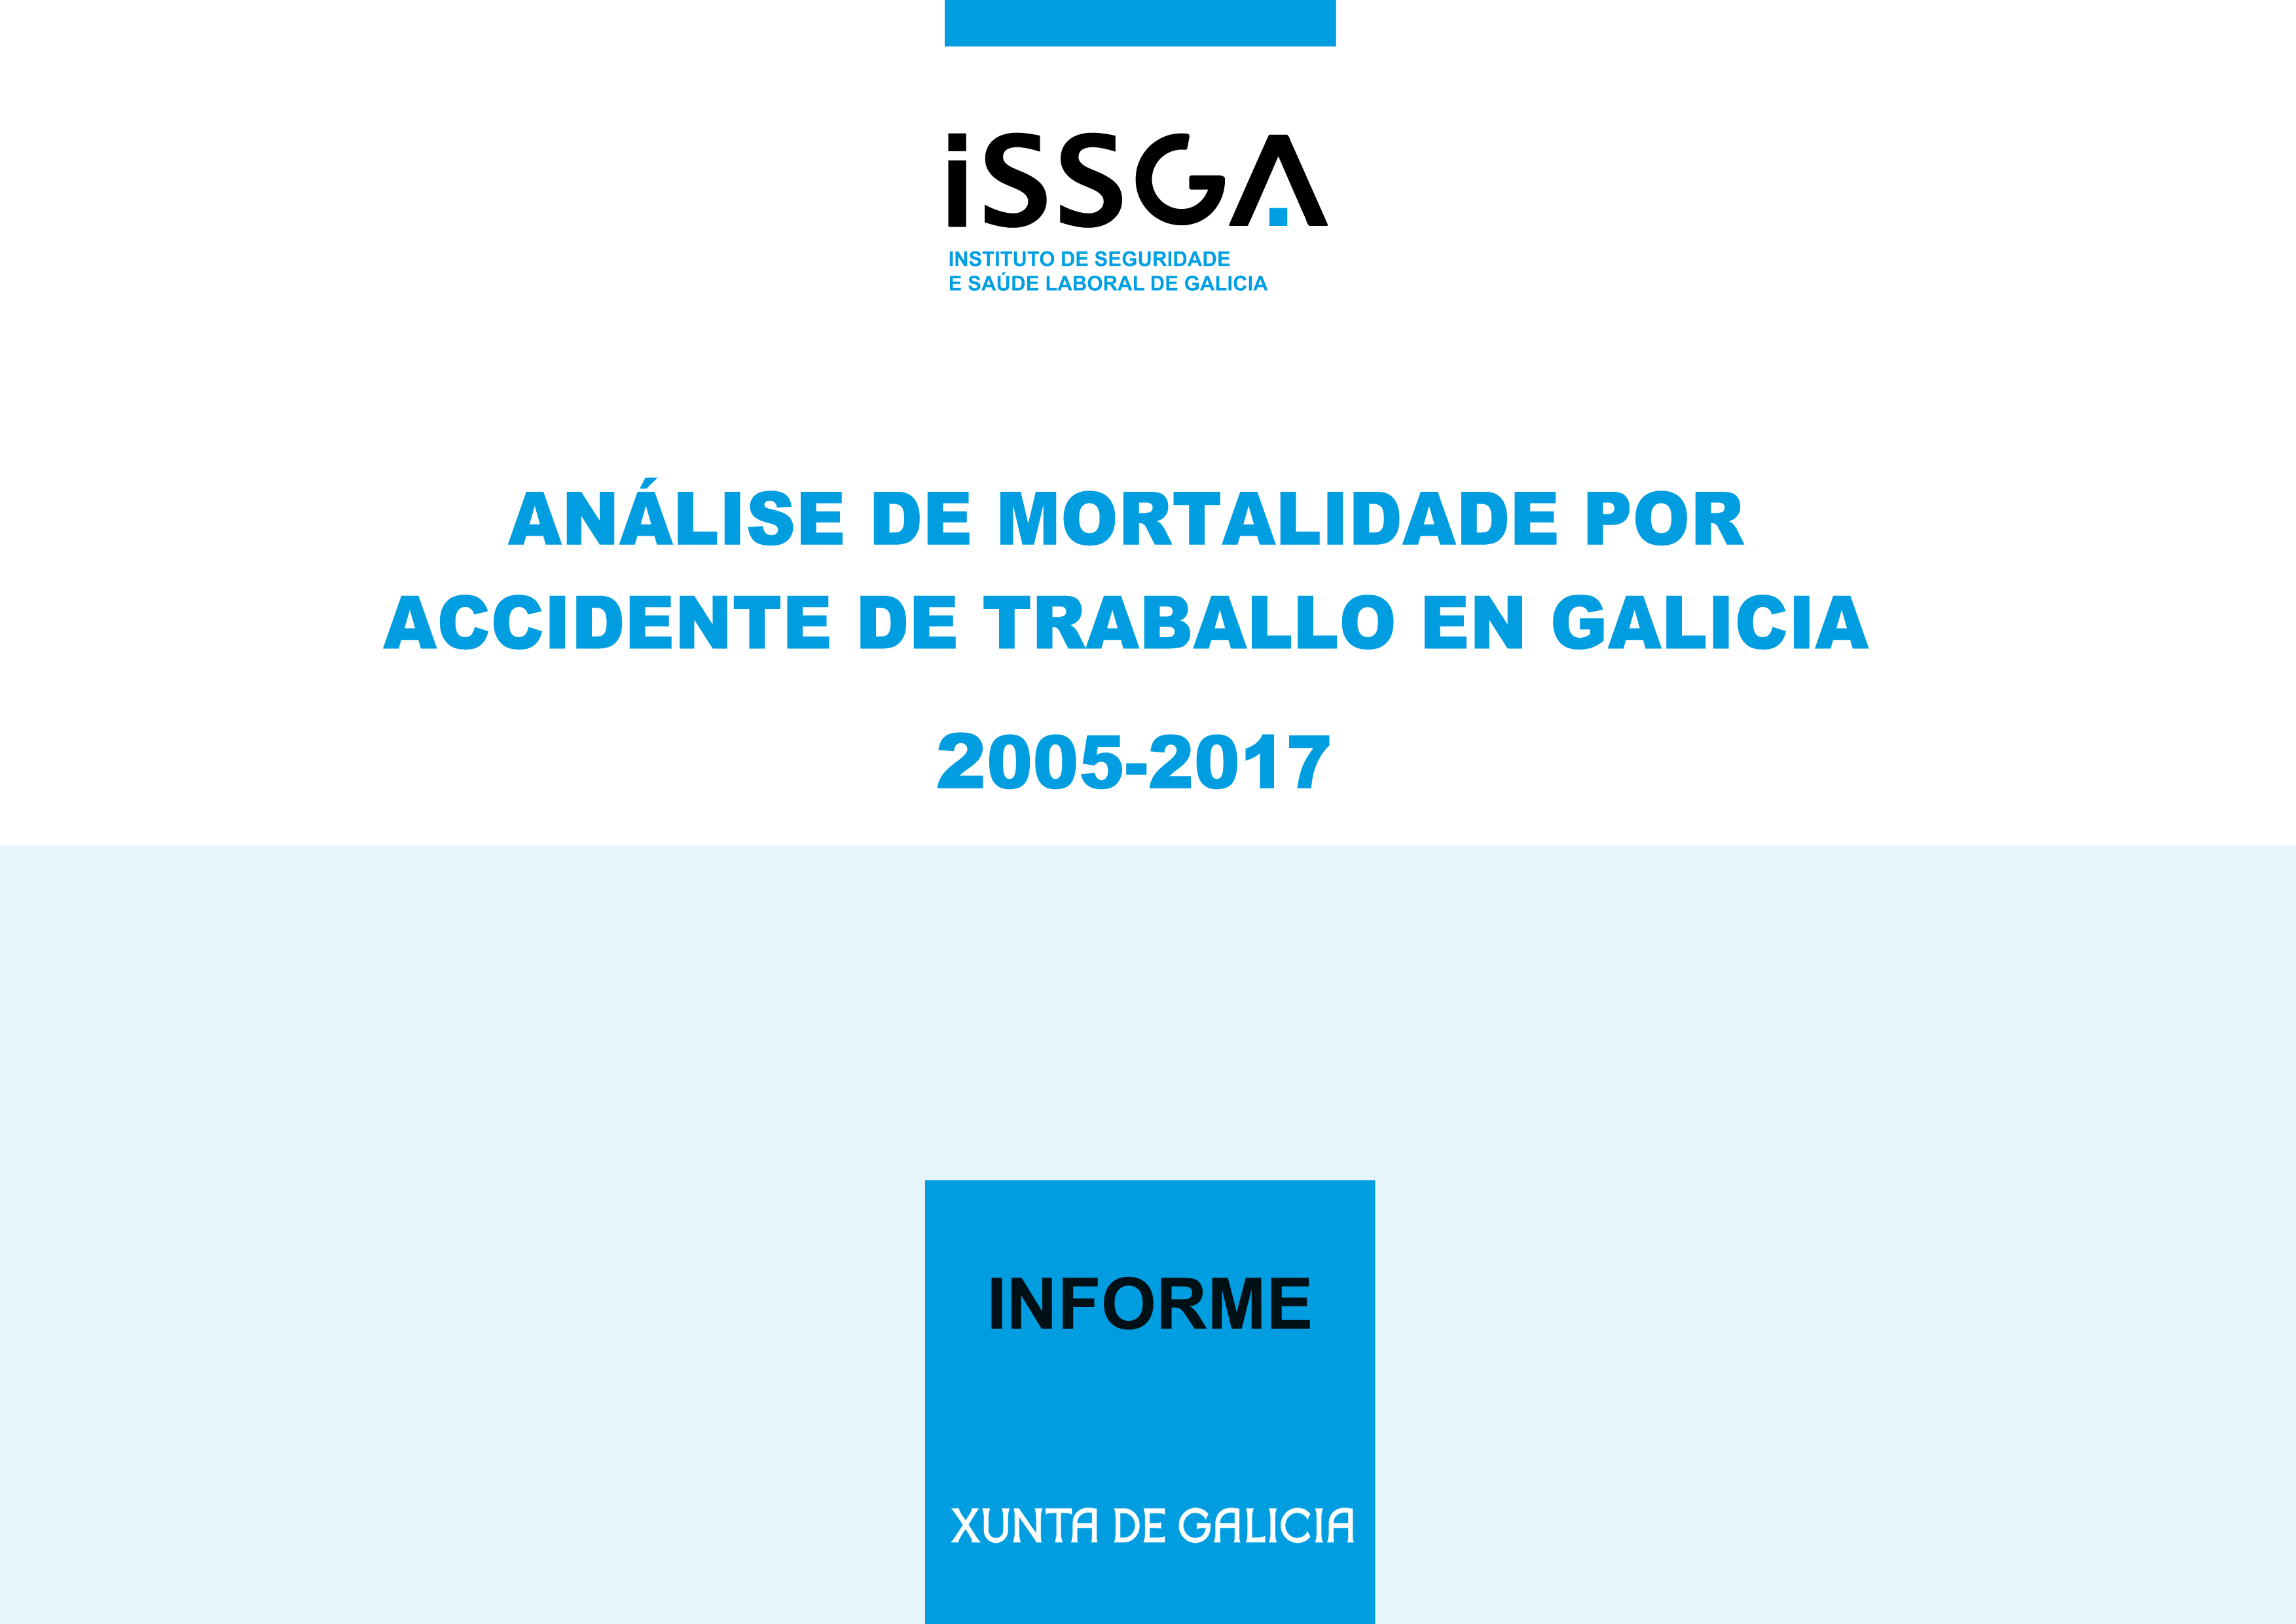 Análise da mortalidade por accidente de traballo en Galicia. 2005-2017